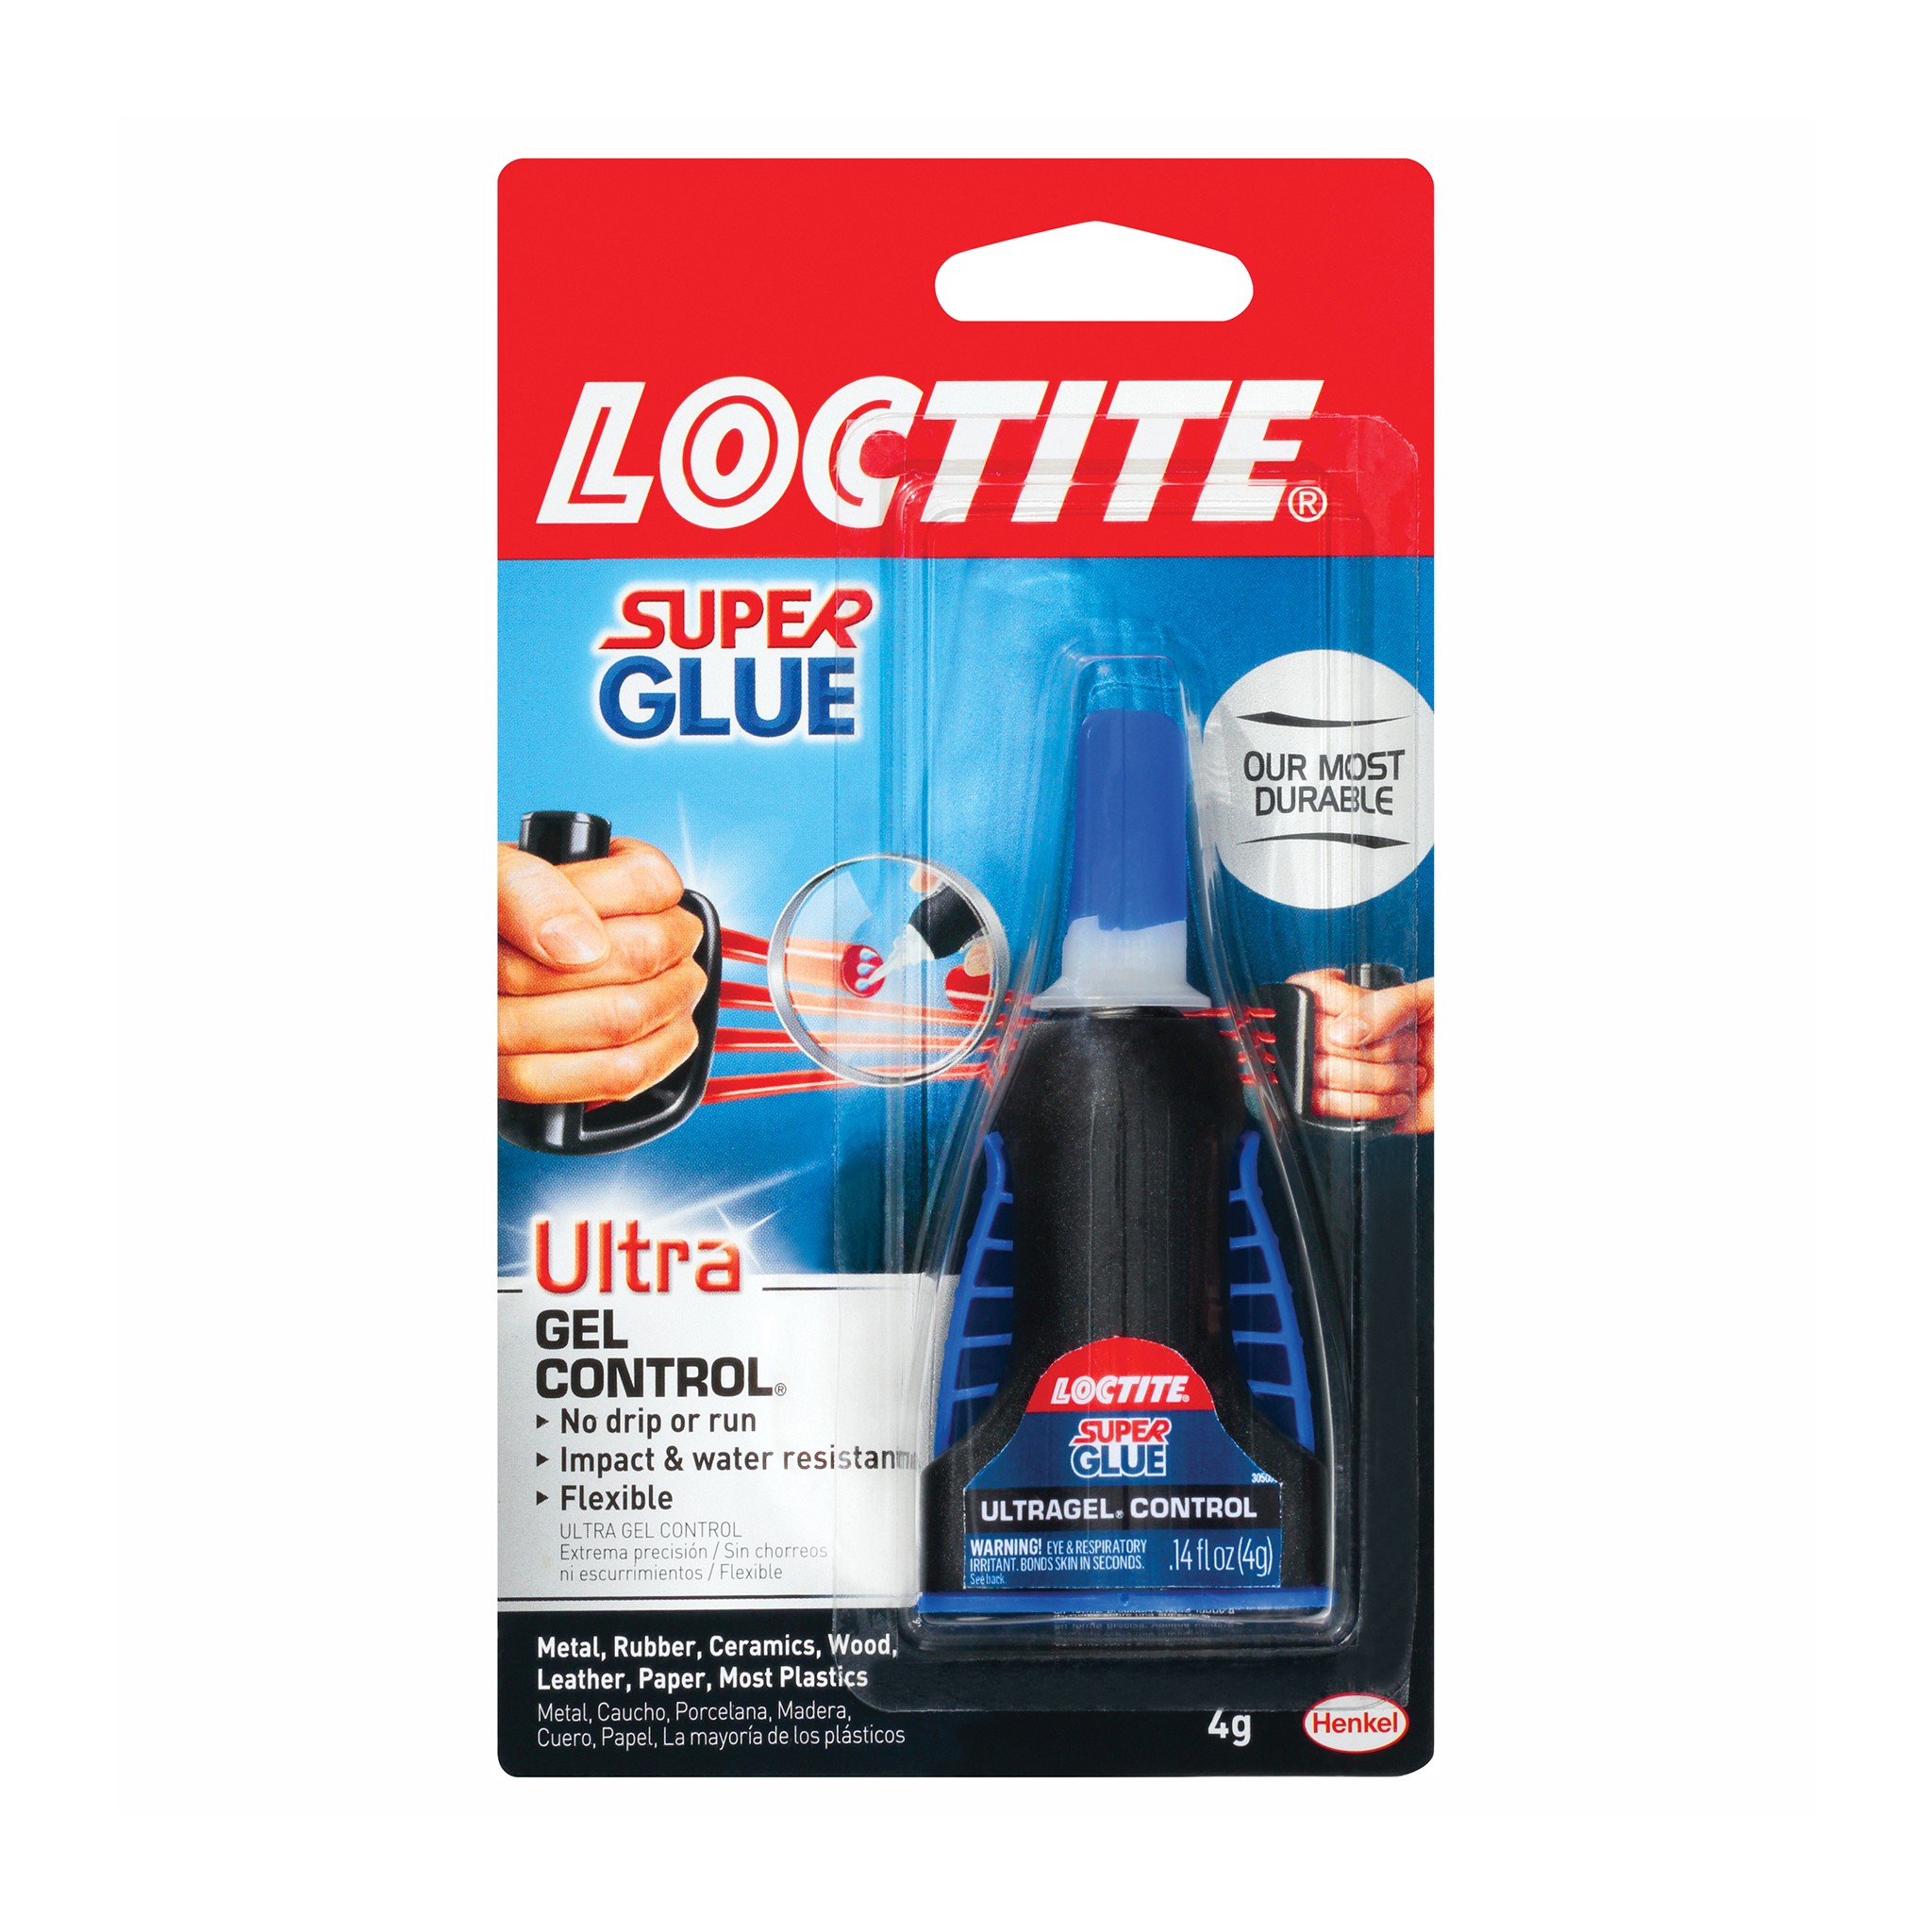 Loctite® Super Glue ULTRA Gel Control™